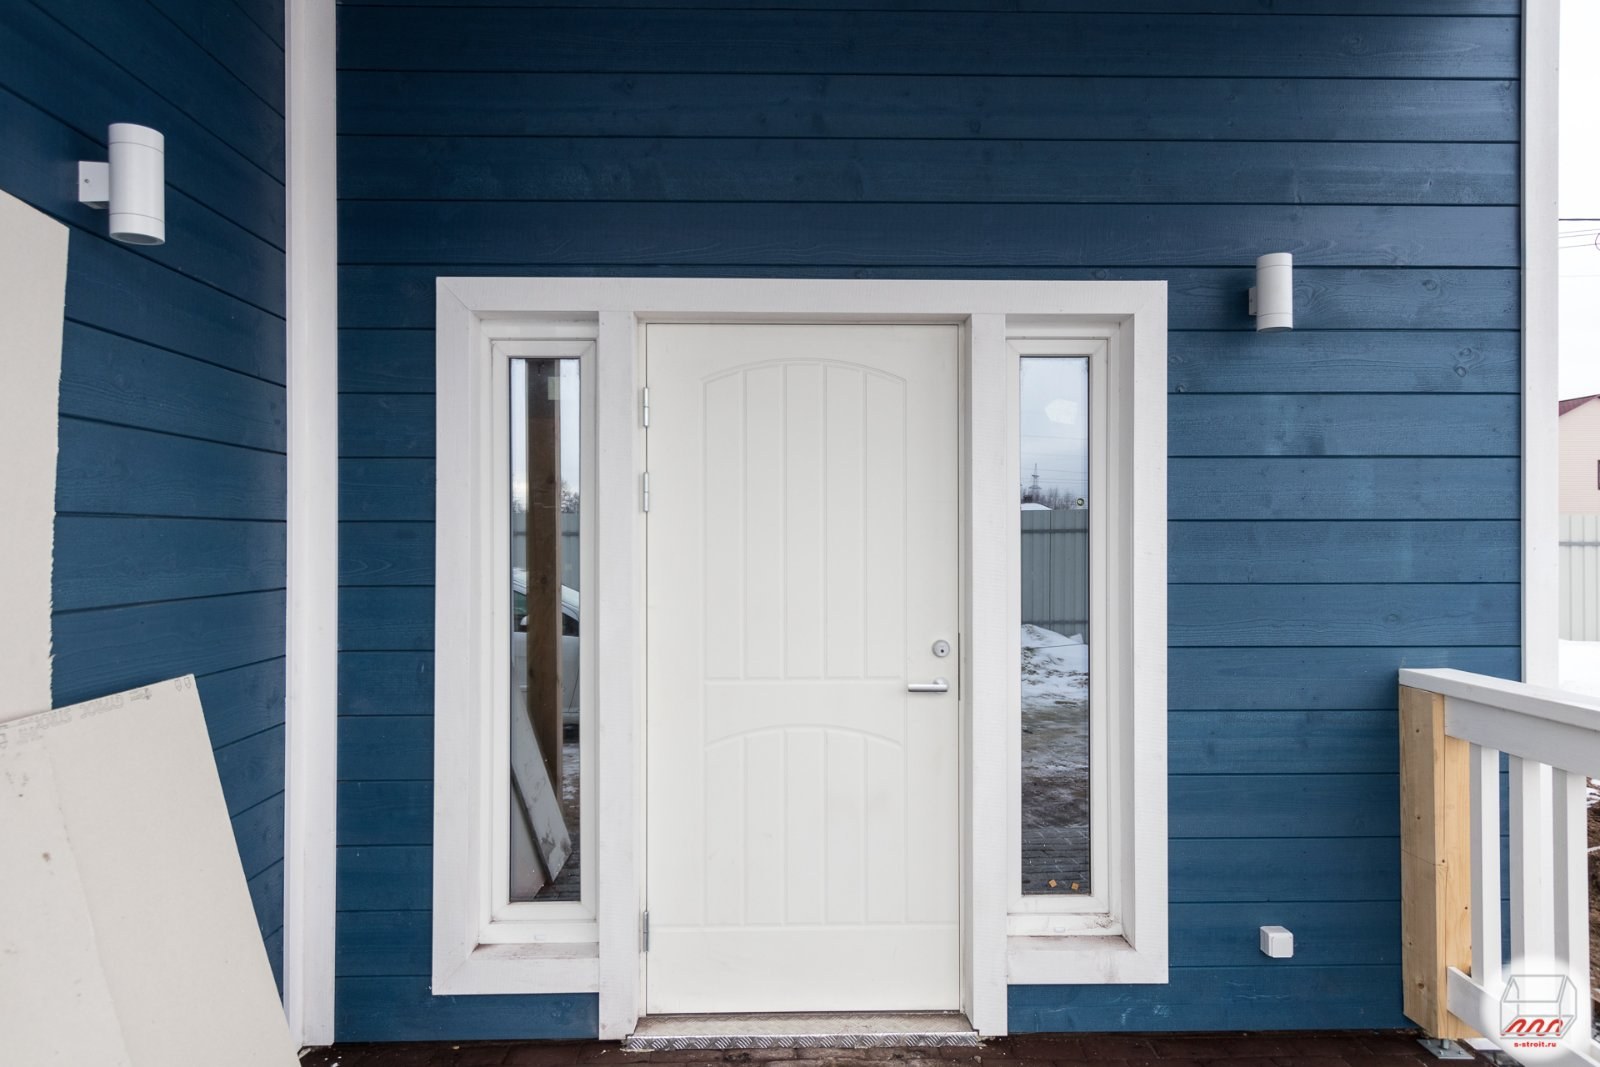 Финская дверь для дома. Финская входная дверь Jeld-Wen. Финские двери Jeld Wen. Входная финская дверь Jeld-Wen Basic 0015 белая. Финские двери Jeld Wen в интерьере.